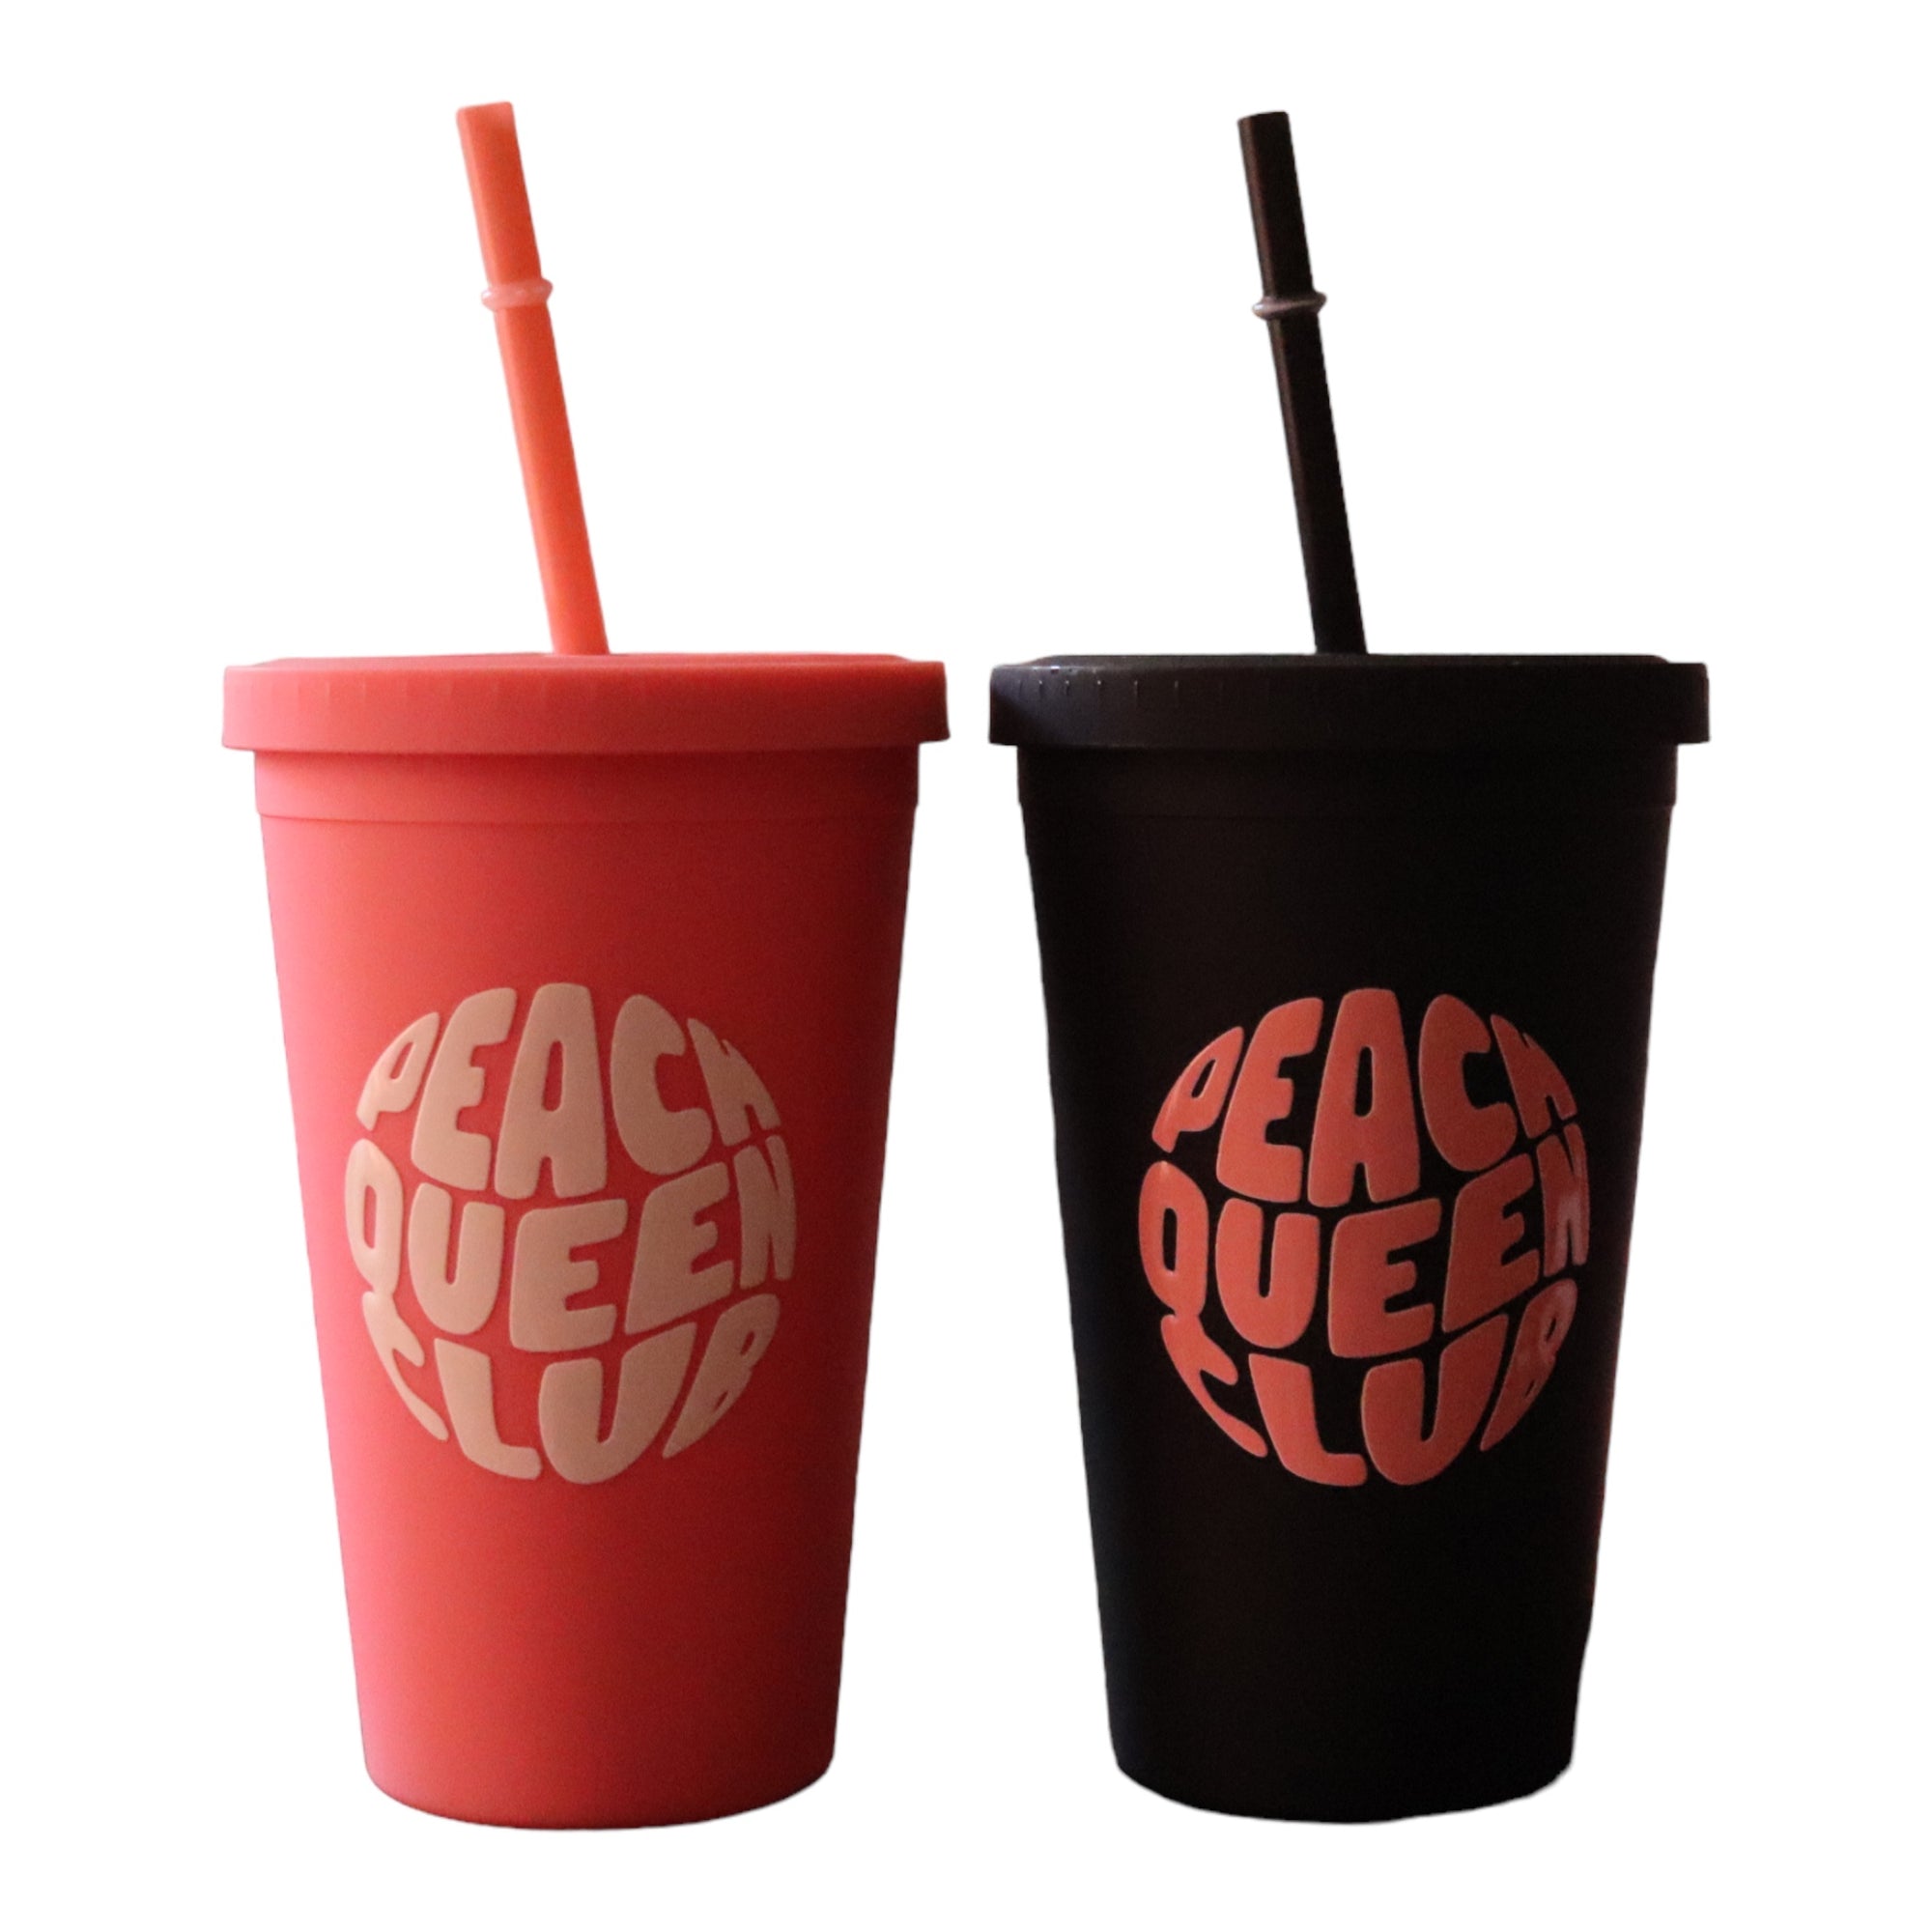 Peach Queen Coffee Cups